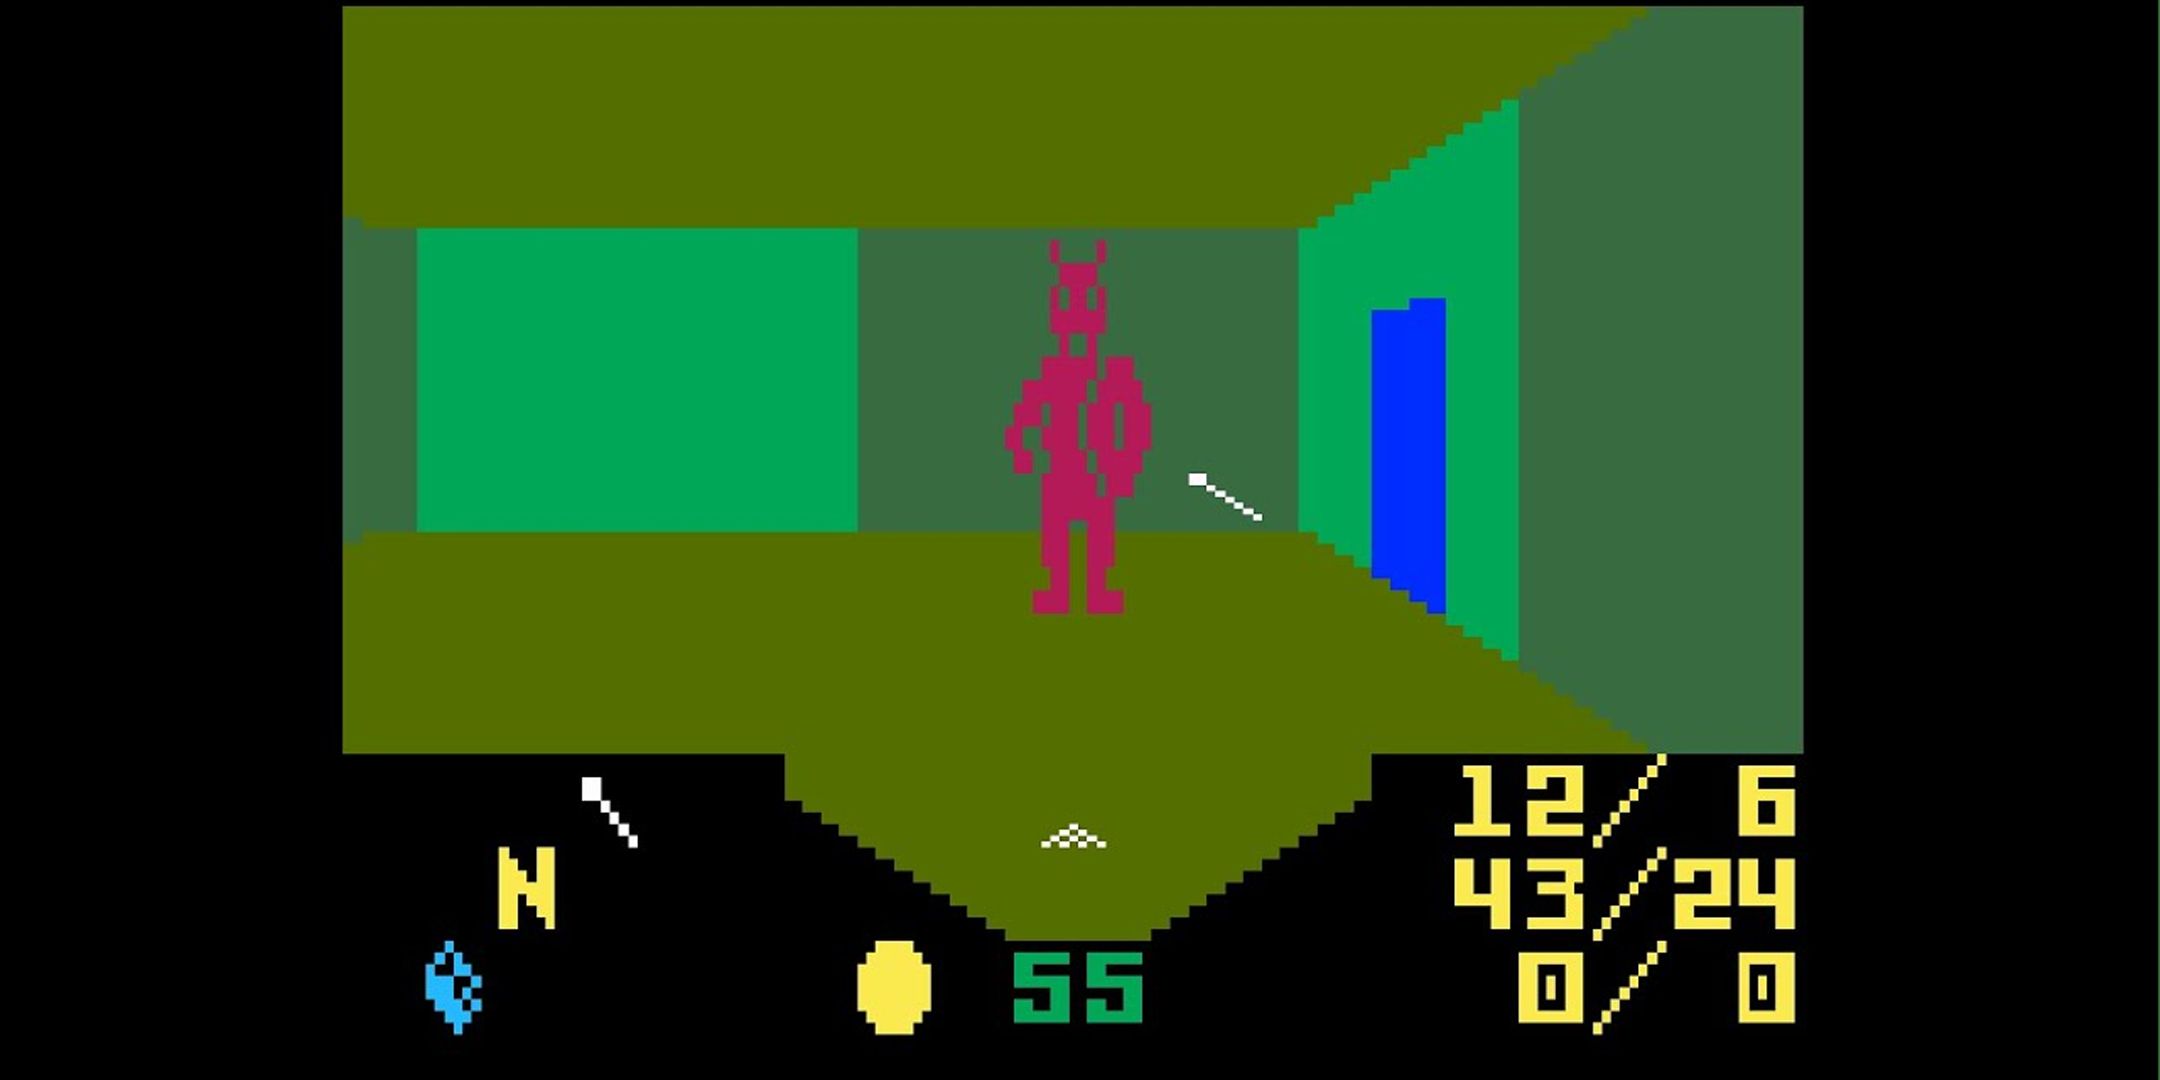 Благодаря последним новостям Atari может появиться больше видеоигр D&D